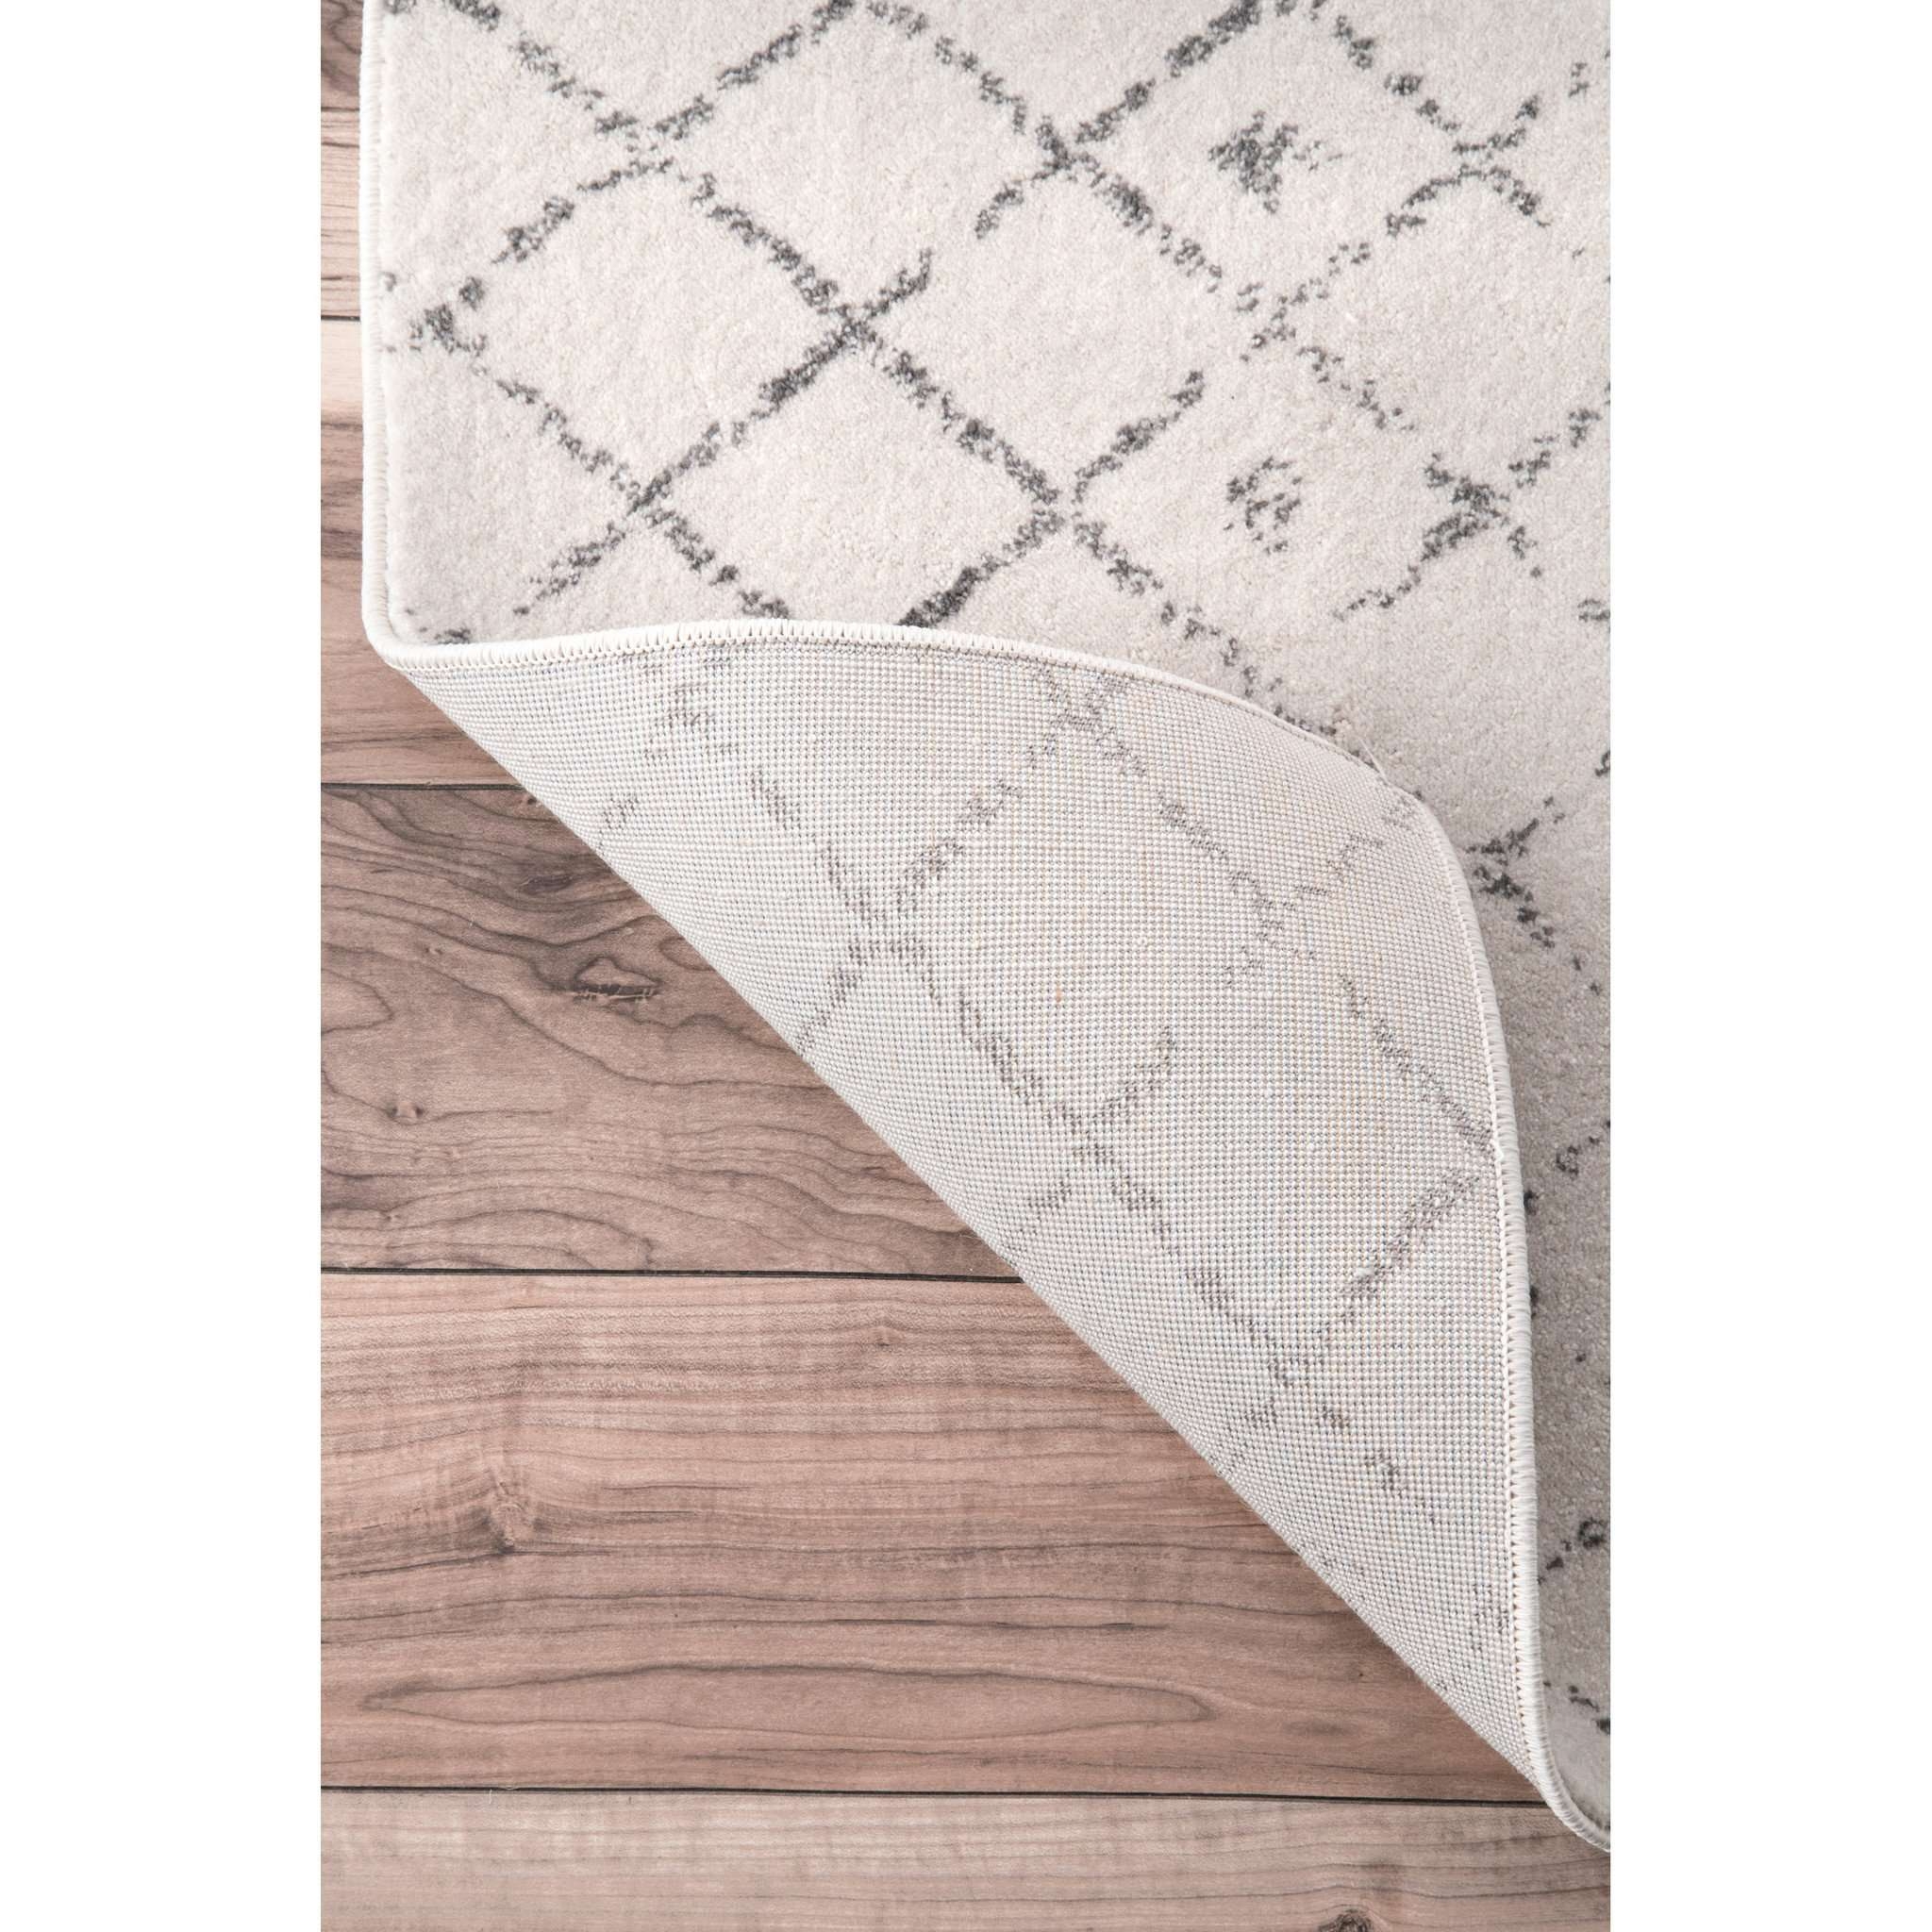 Moroccan Blythe Rug, Gray, 8' x 10' - Image 2